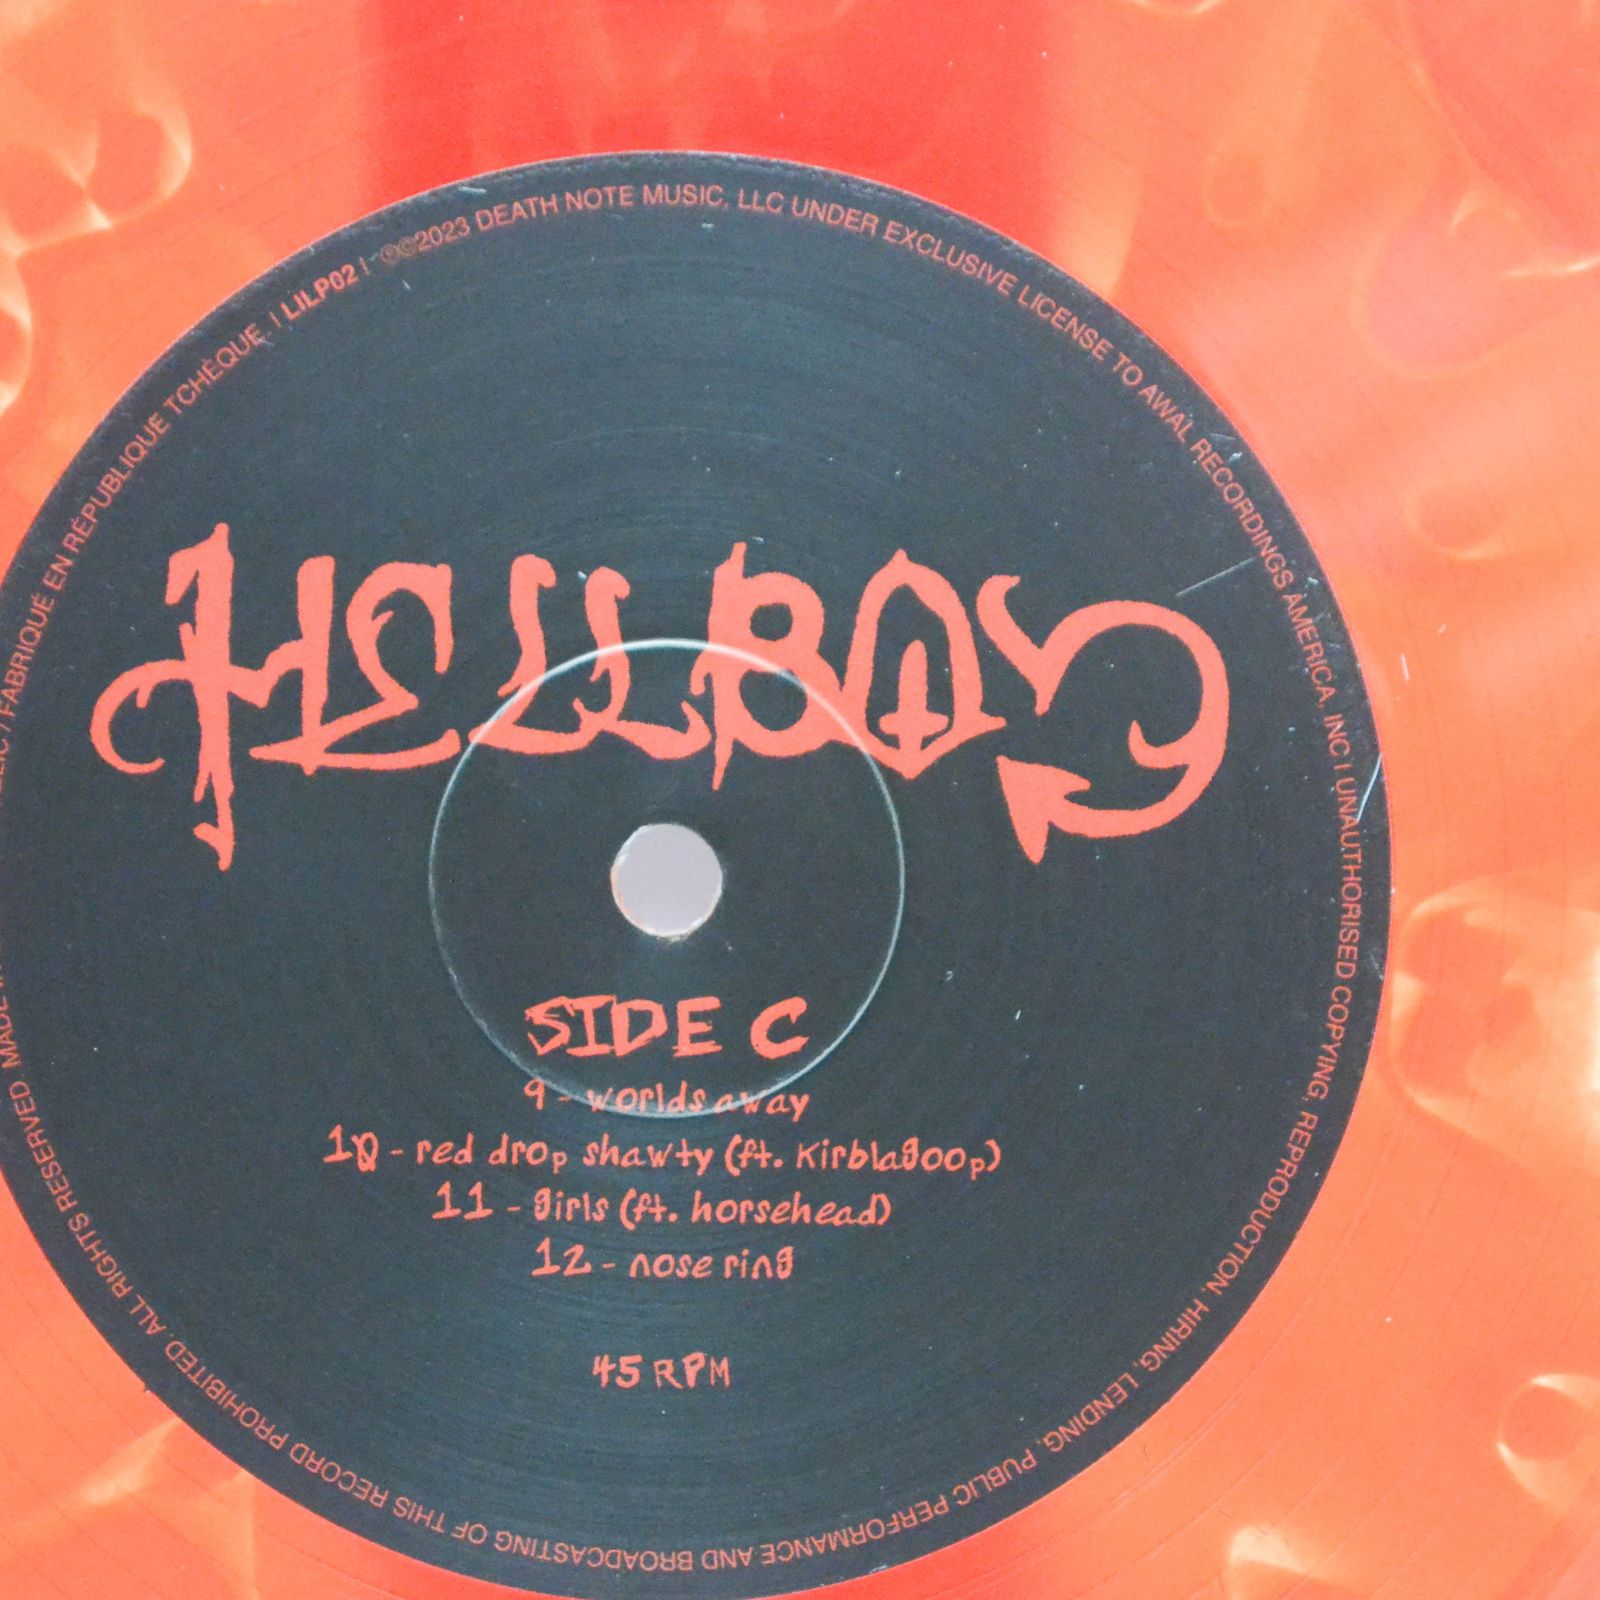 Lil Peep — Hellboy (2LP, USA), 2023